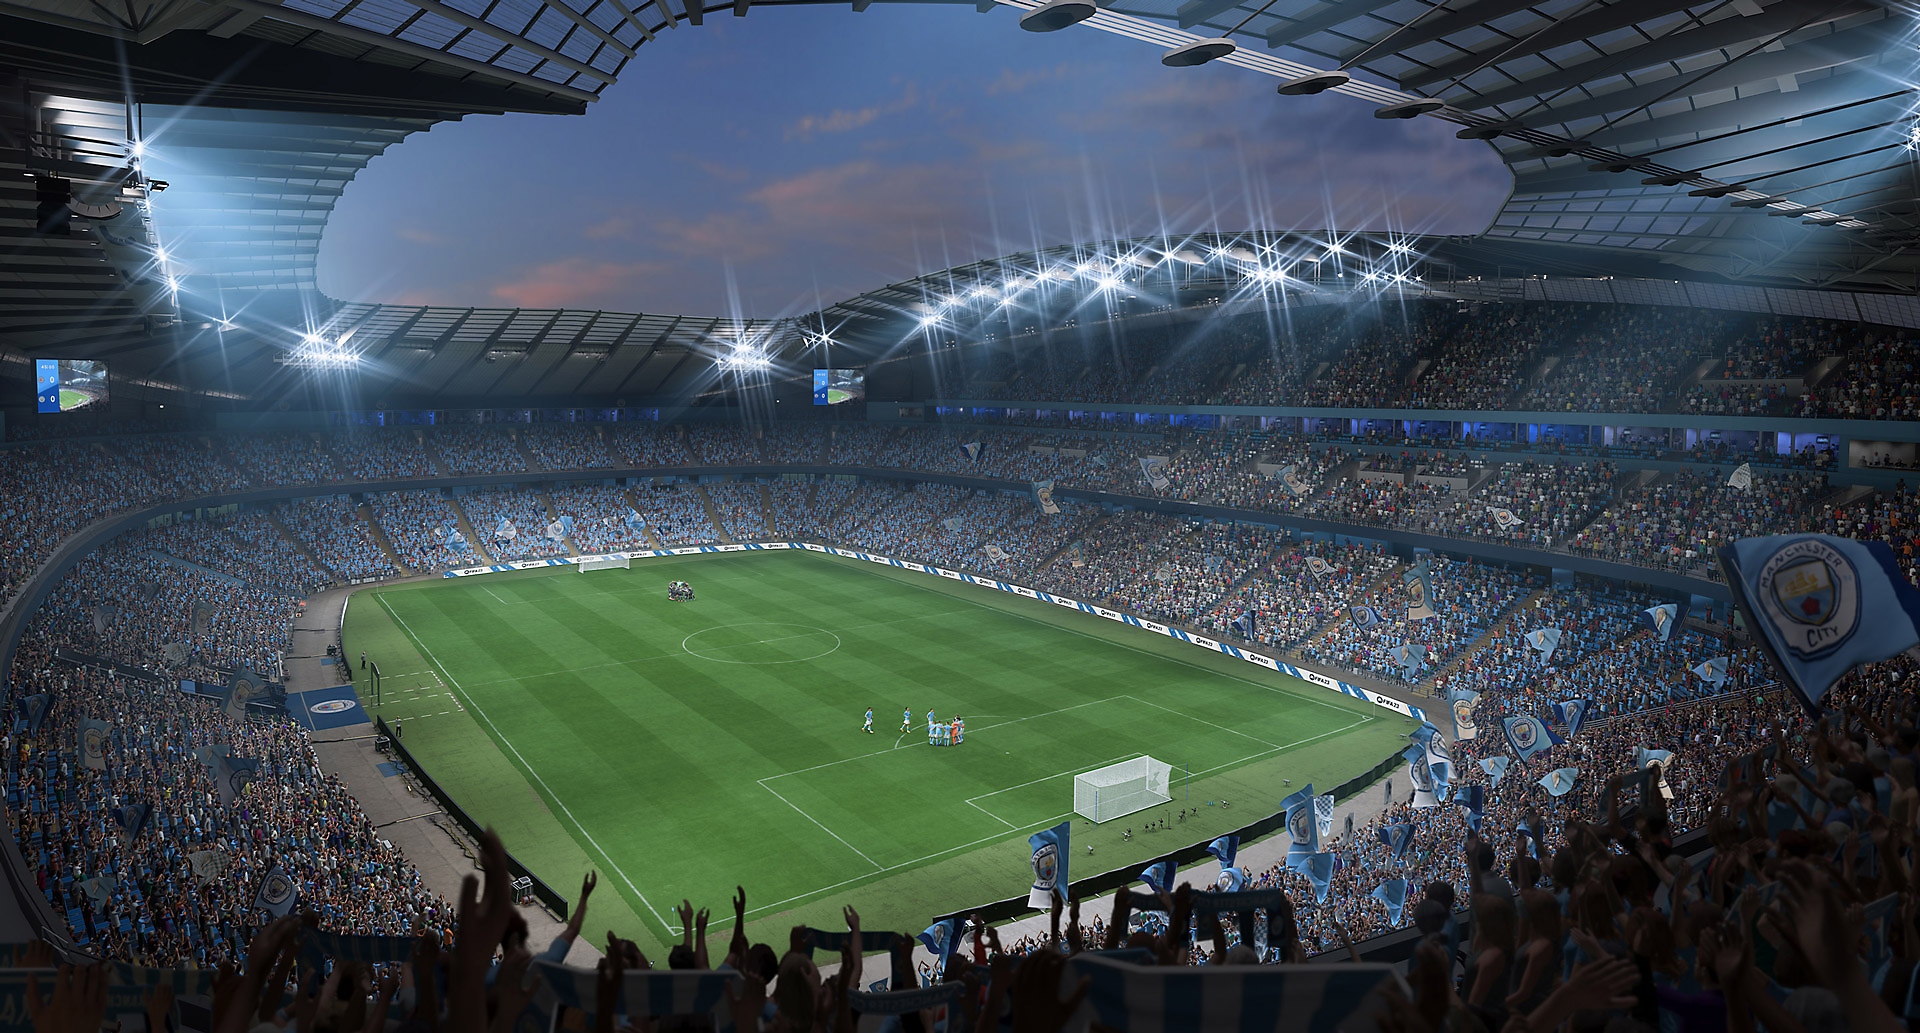 Videozapis igre EA Sports FIFA 23 prikazuje obožavatelje nogometa na stadionu kako bodre svoje ekipe.